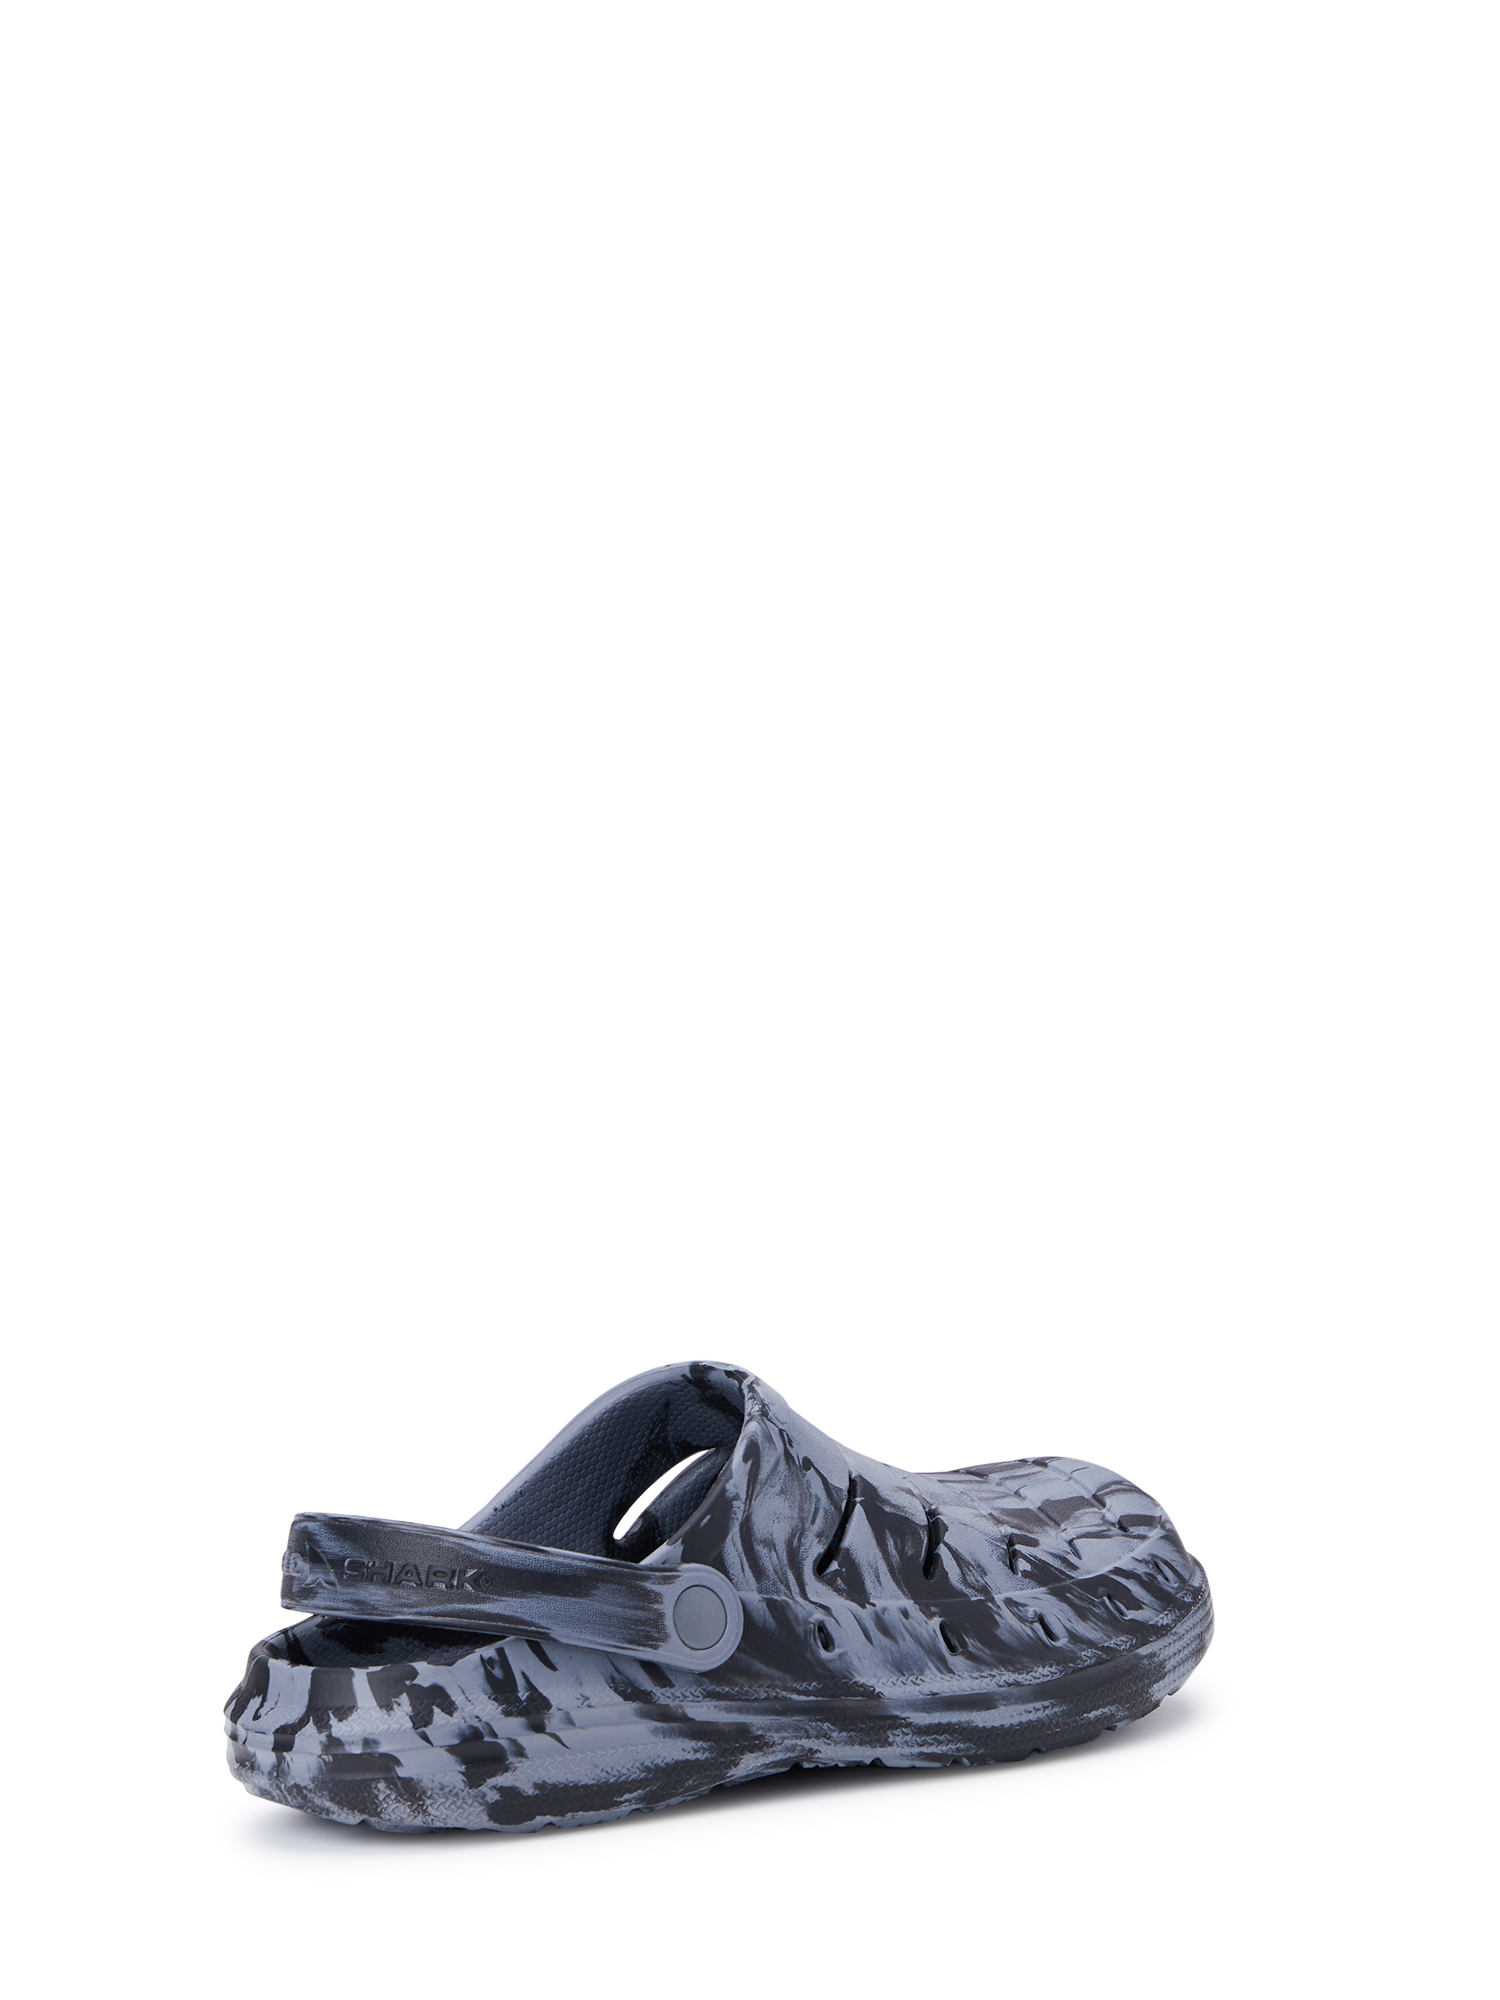 Famous Brands Slipper EVA Men Sandals Slides Footwear Slide Sandal Beach  Slippers - China Design Walking Shoes and L V Sneaker for Men Women price